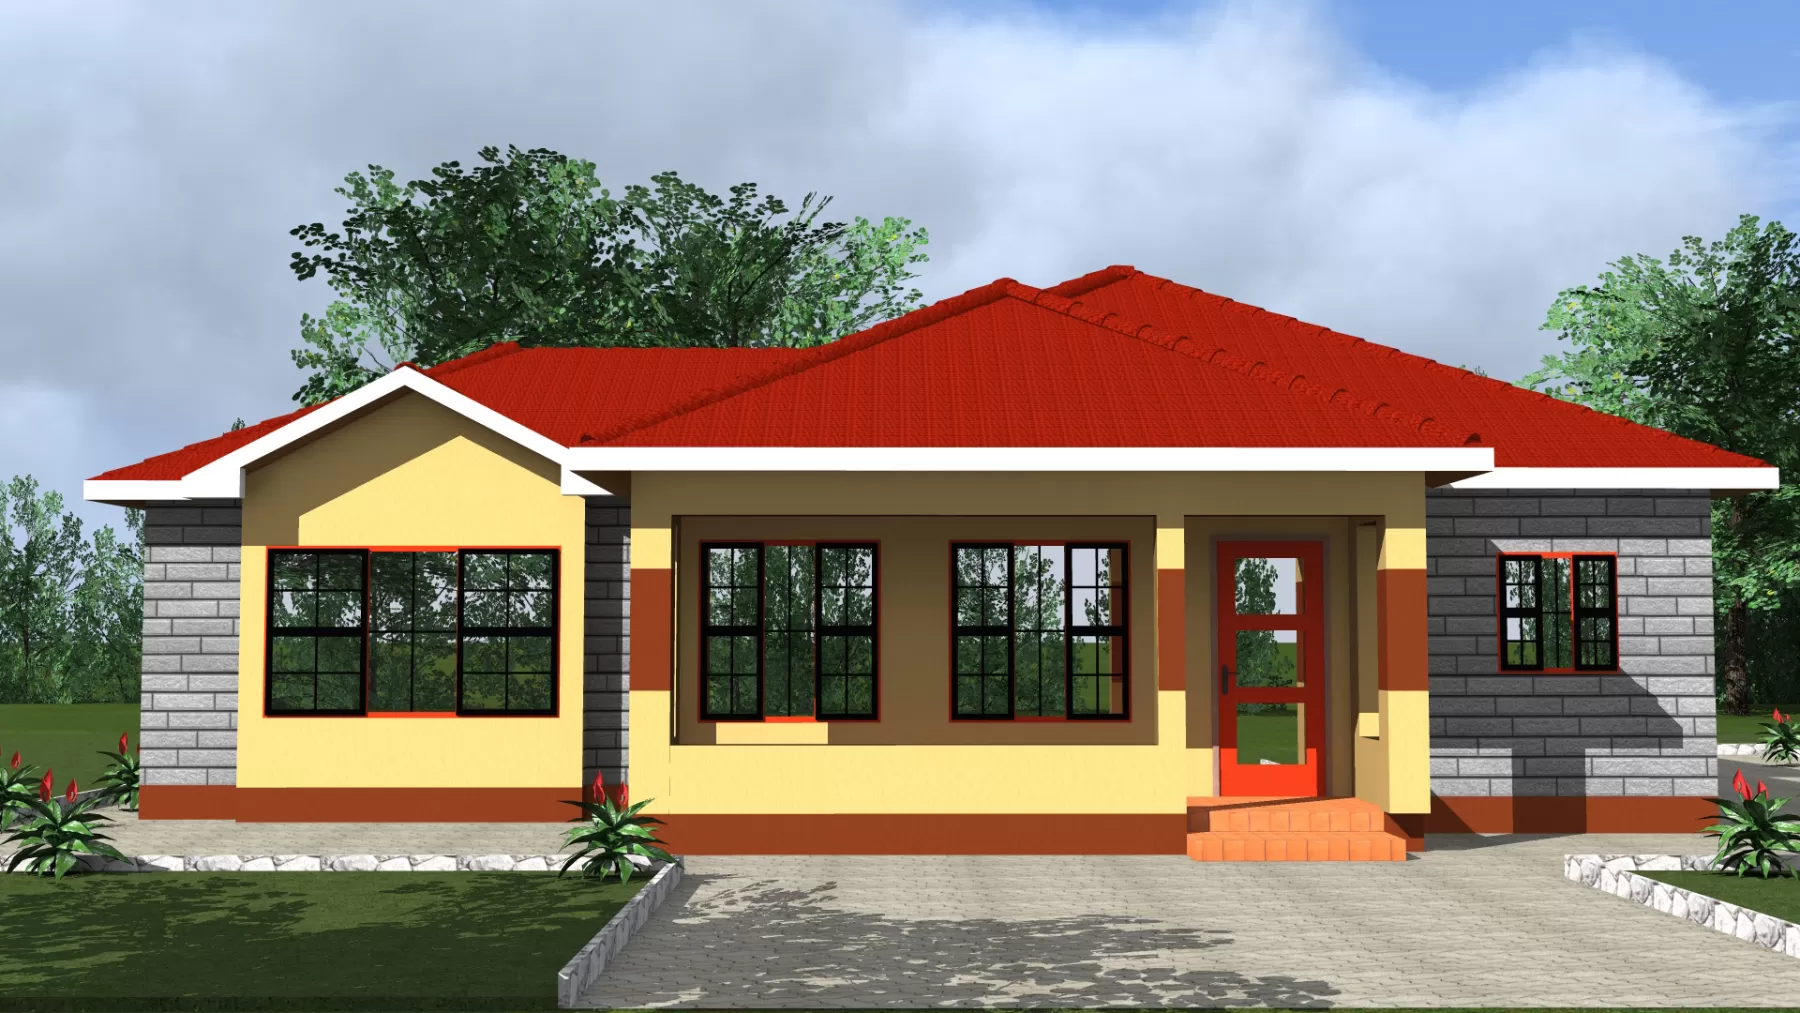 SIMPLE HOUSE PLANS IN KENYA.